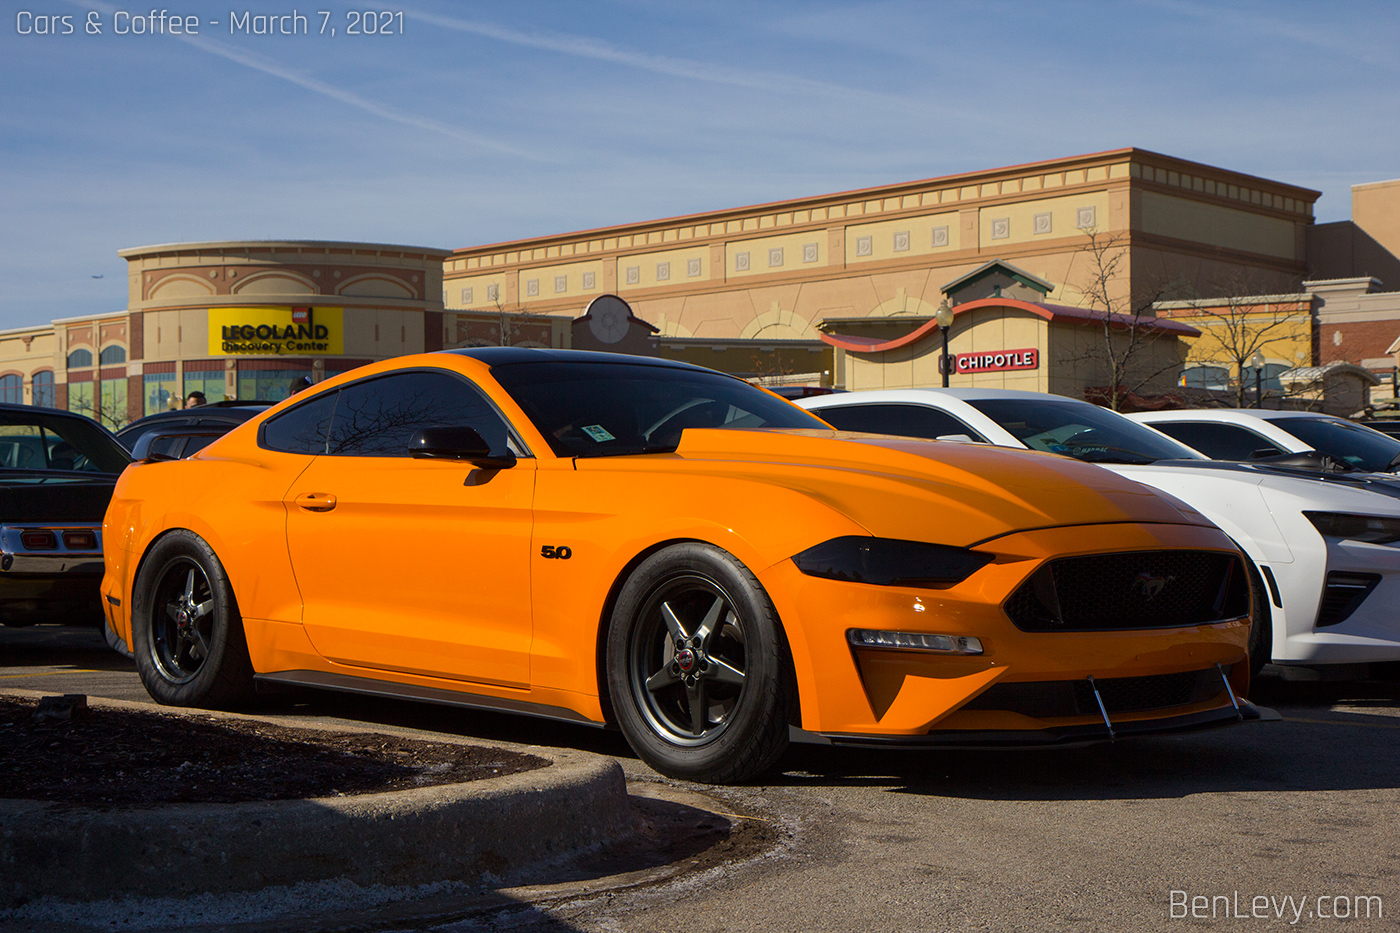 Orange Ford Mustang 5.0